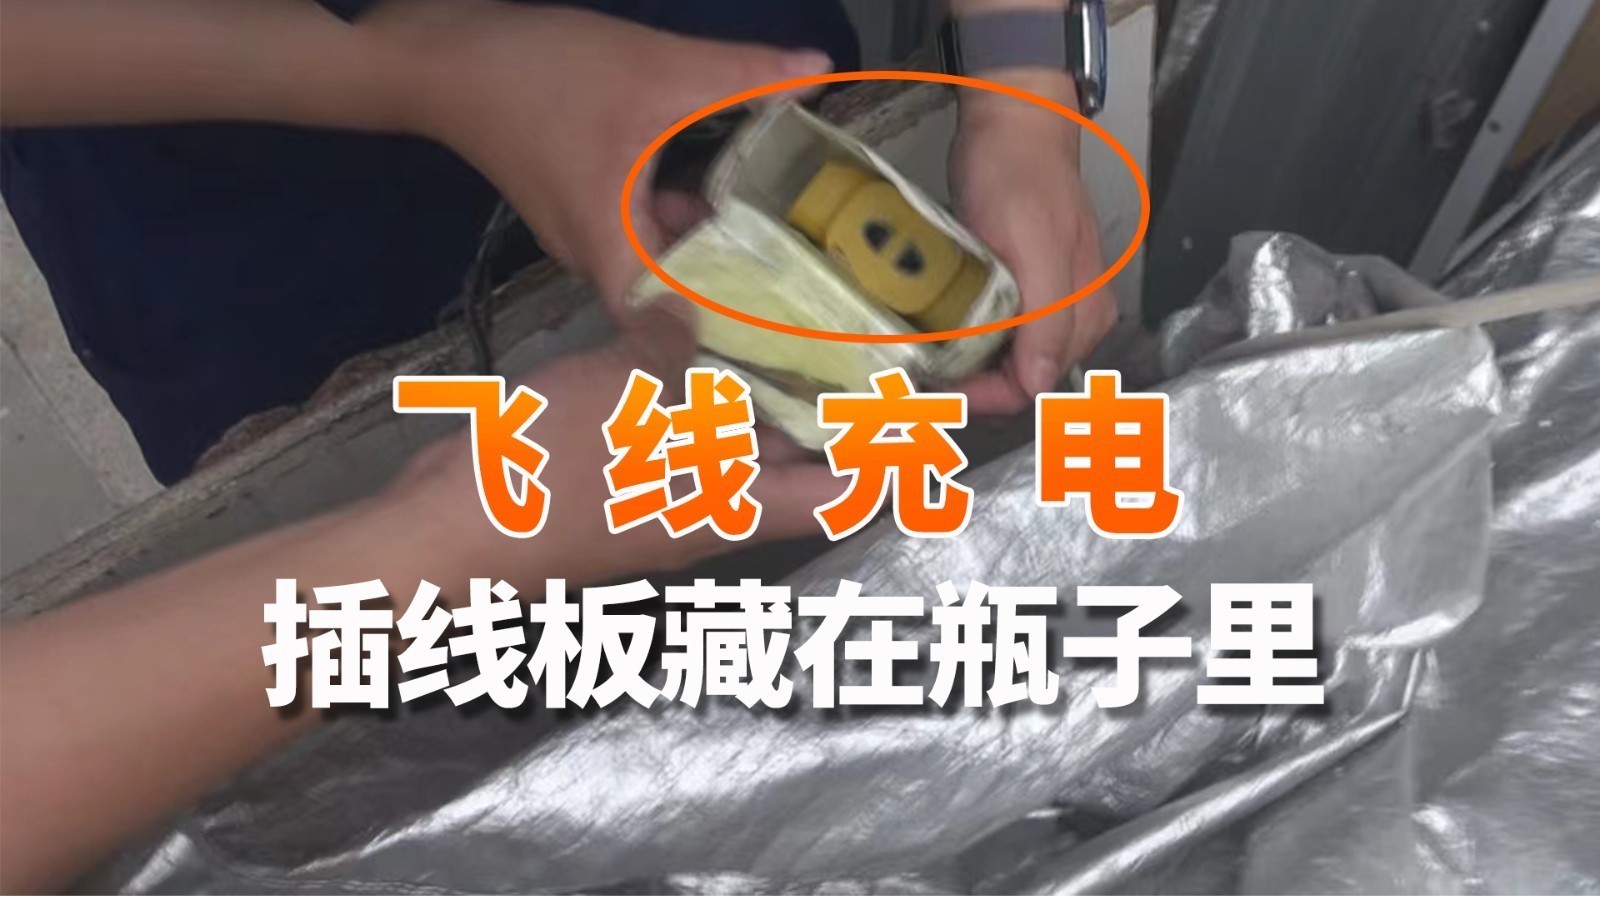 插线板藏在瓶子里飞线充电 北京消防排查电动自行车隐患